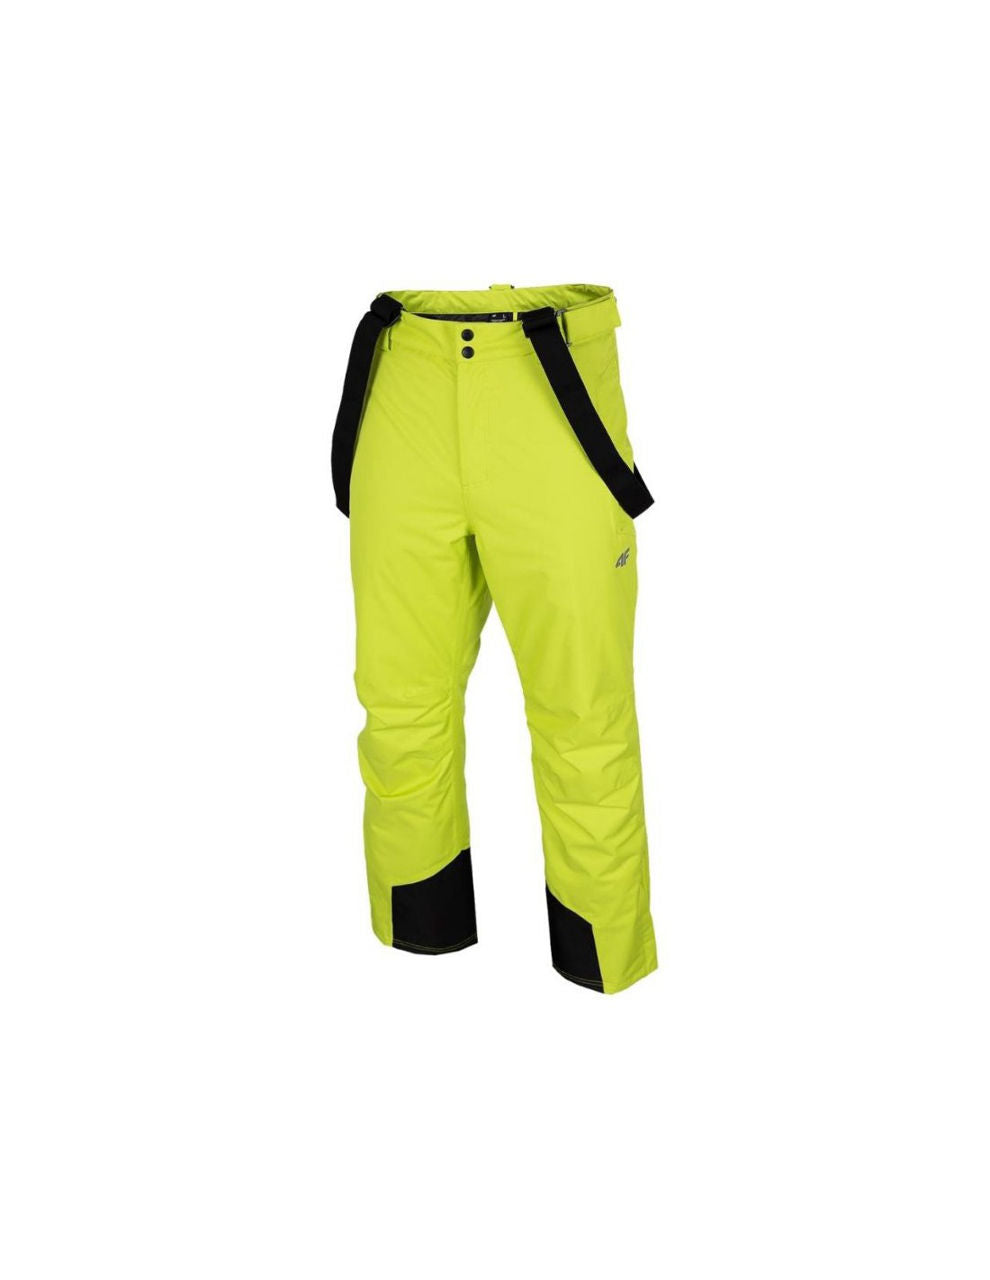 Лыжные штаны 4F men's ski trousers spmn001 canary green